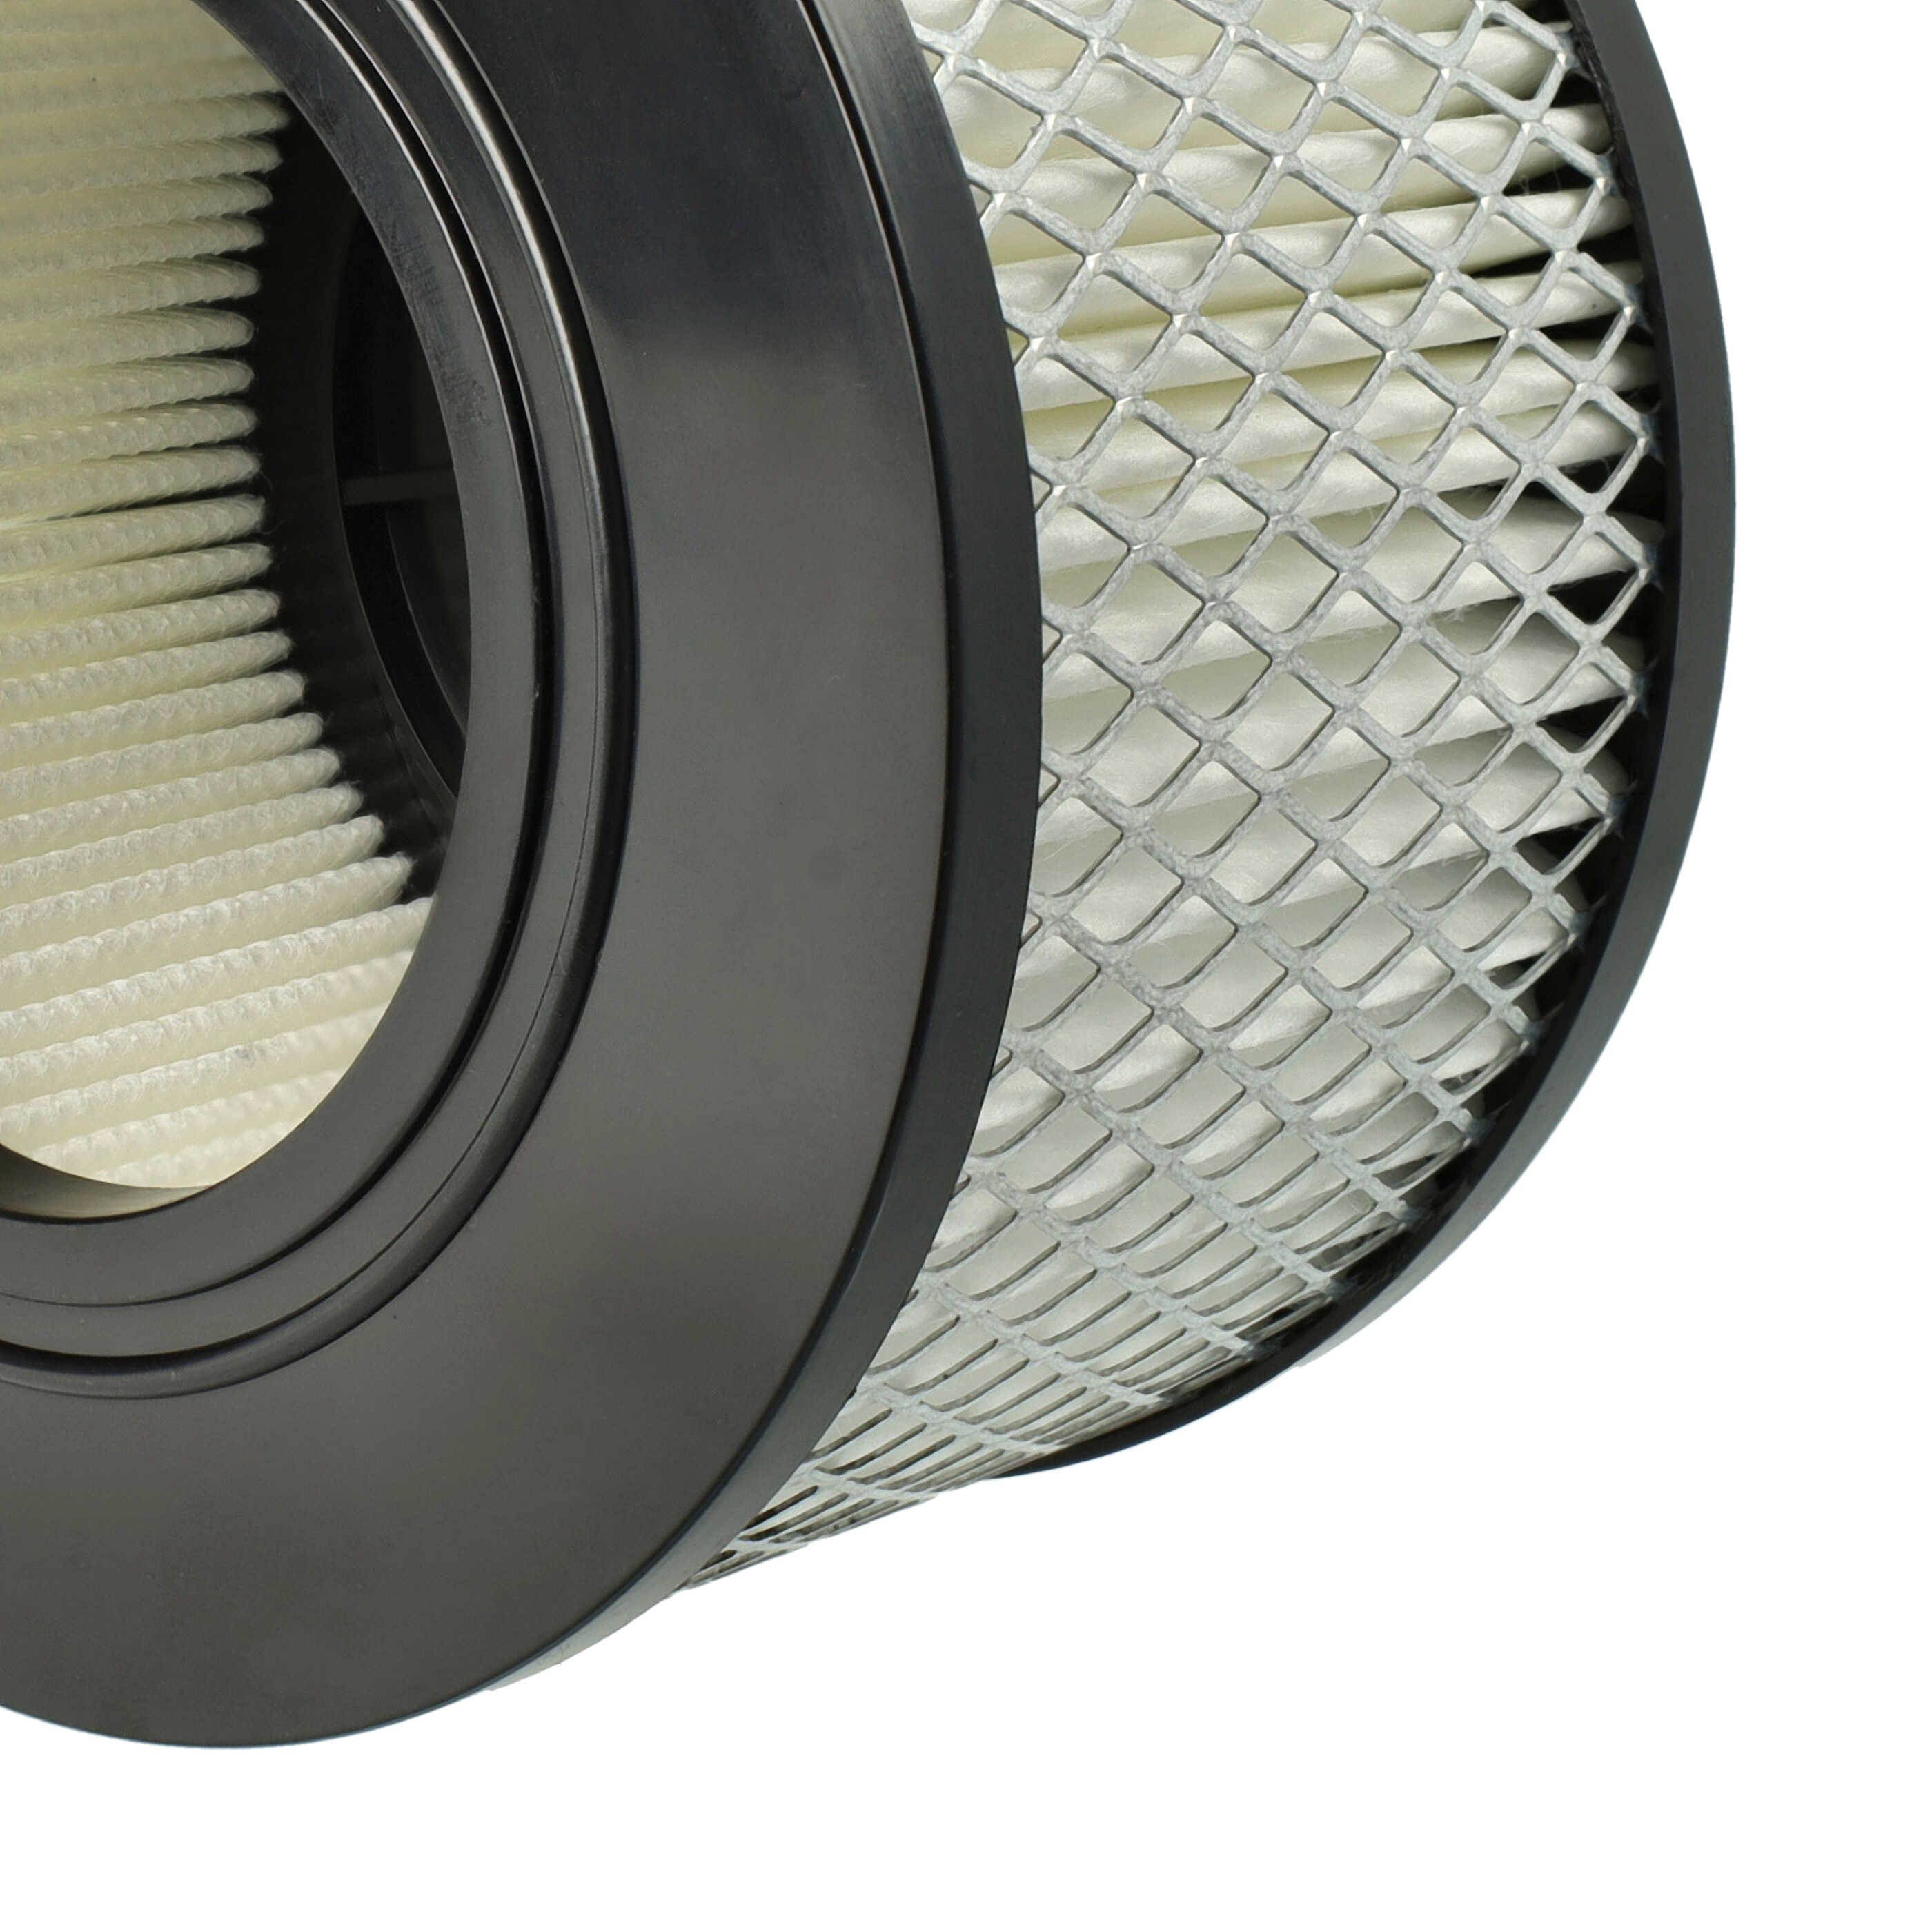 Filtro reemplaza Flex 445.126 para aspiradora - filtro Hepa negro / blanco